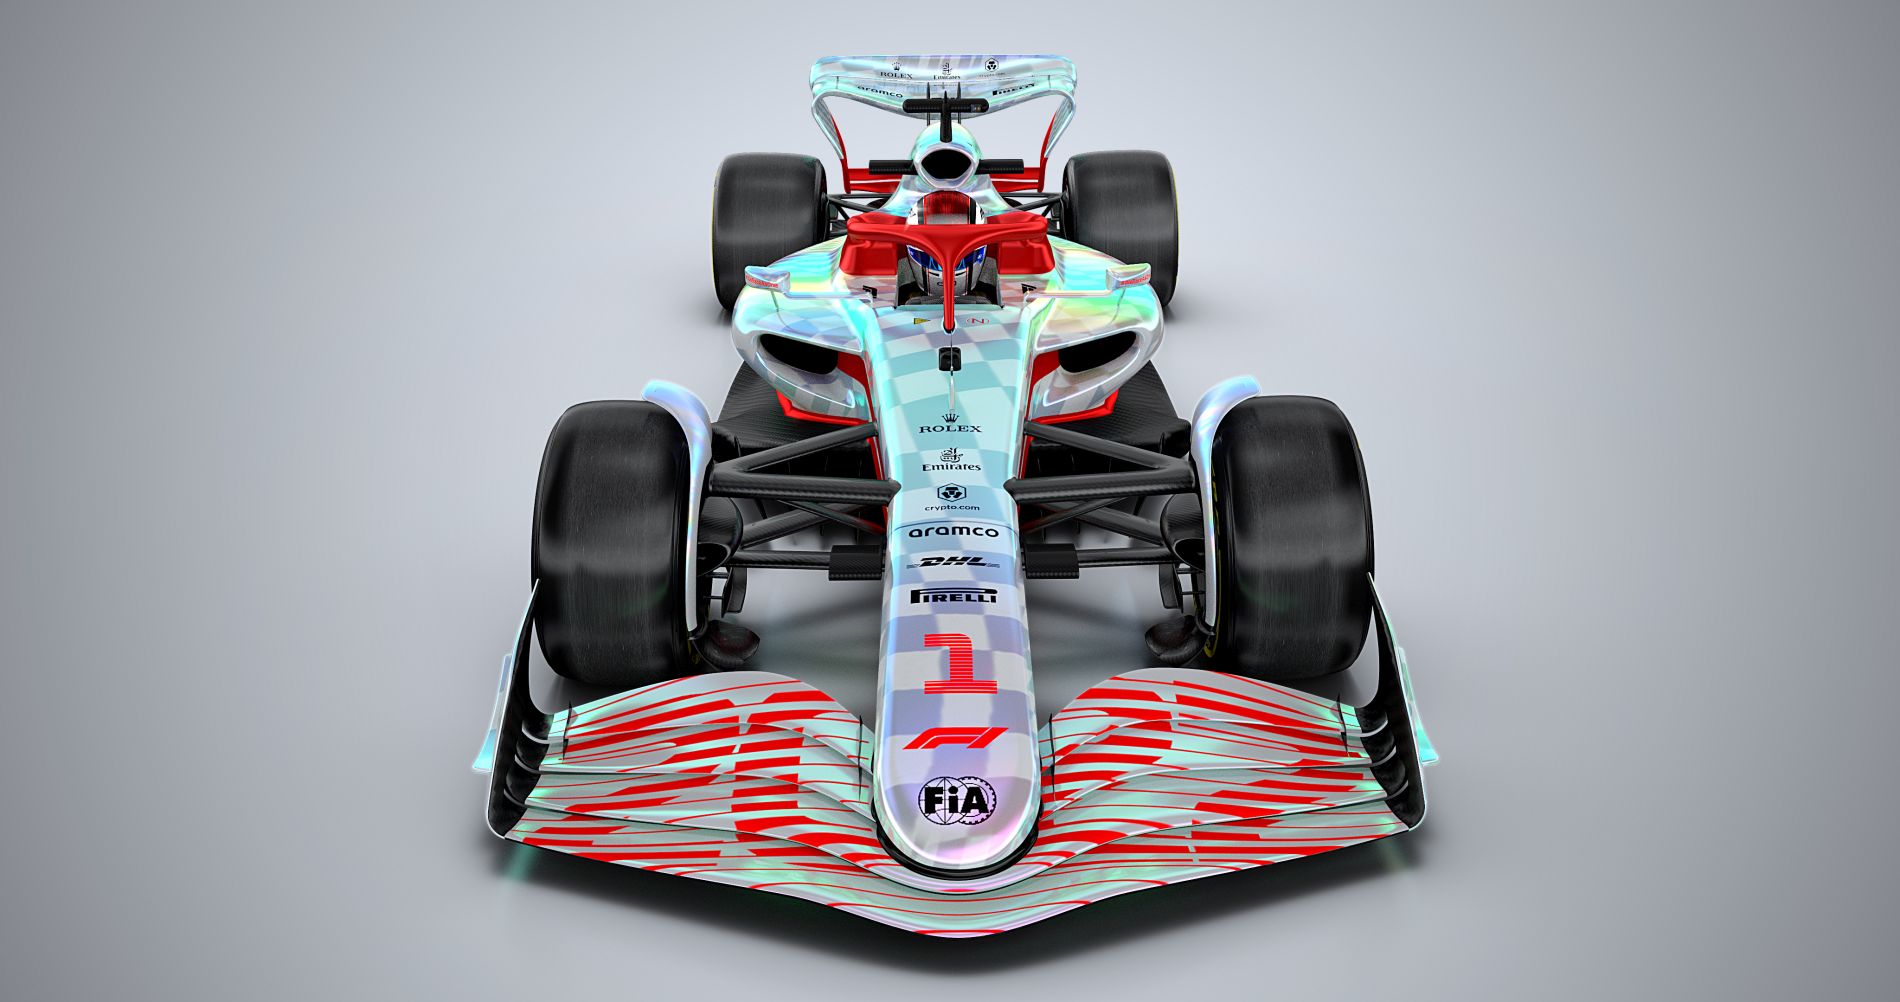 F1 2021 x F1 22: comparativo mostra evolução gráfica sutil na nova geração